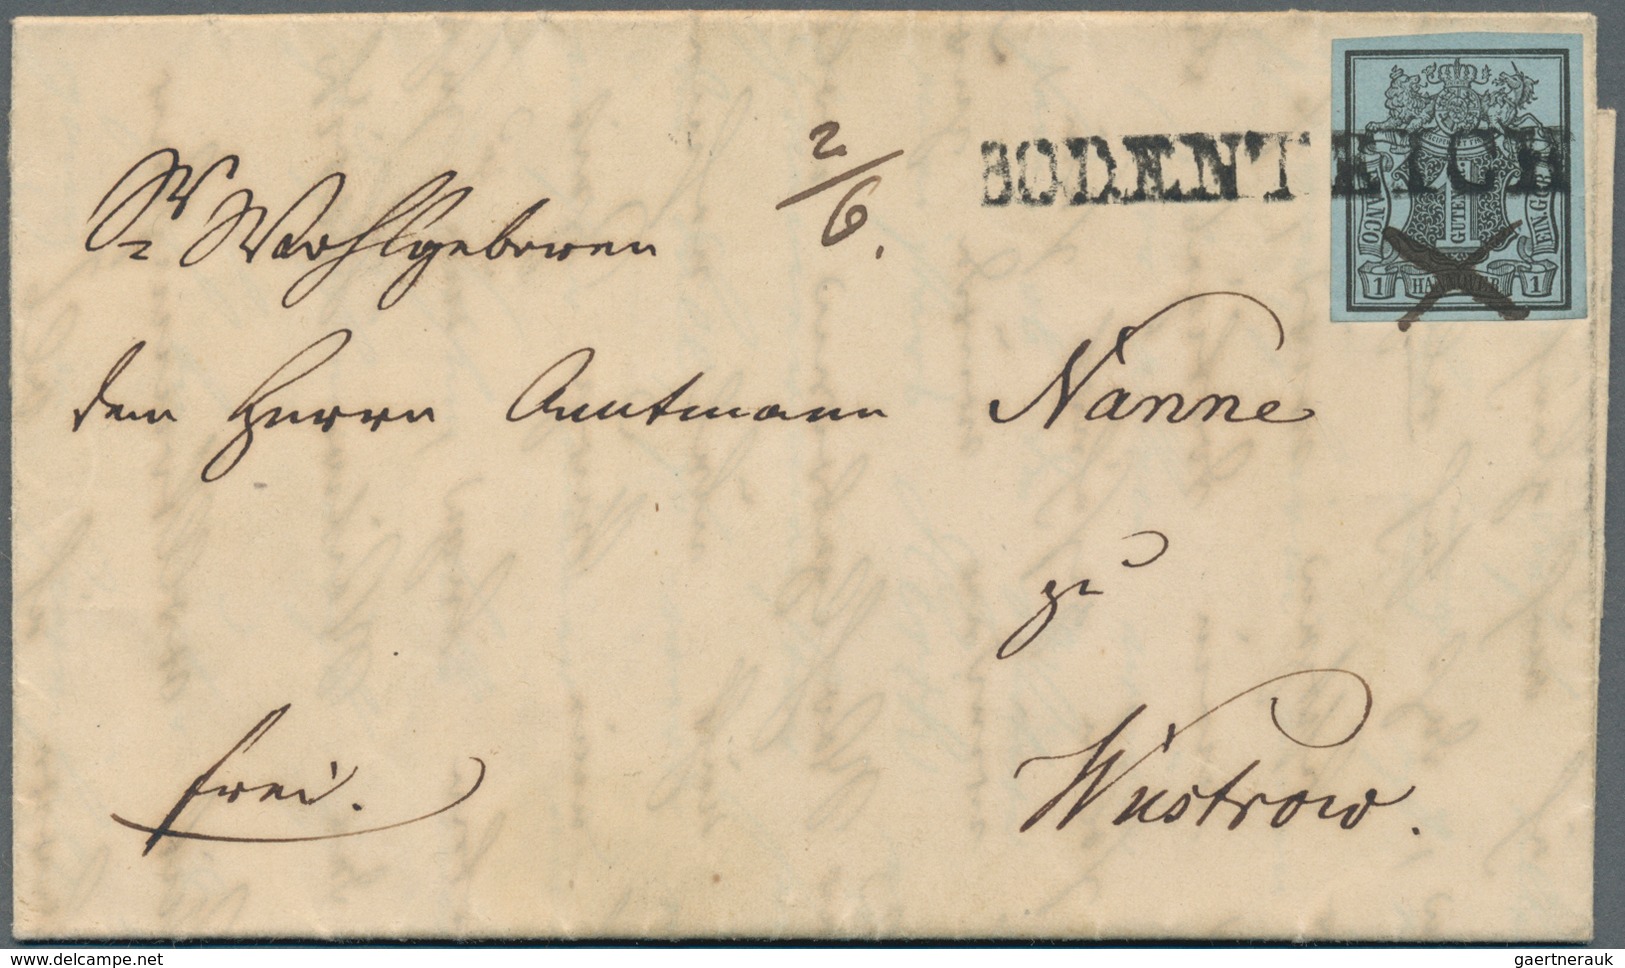 Hannover - Marken Und Briefe: 1850/1870 (ca.), Meist Gestempelte Sammlung Sauber Aufgezogen Auf Albu - Hanover